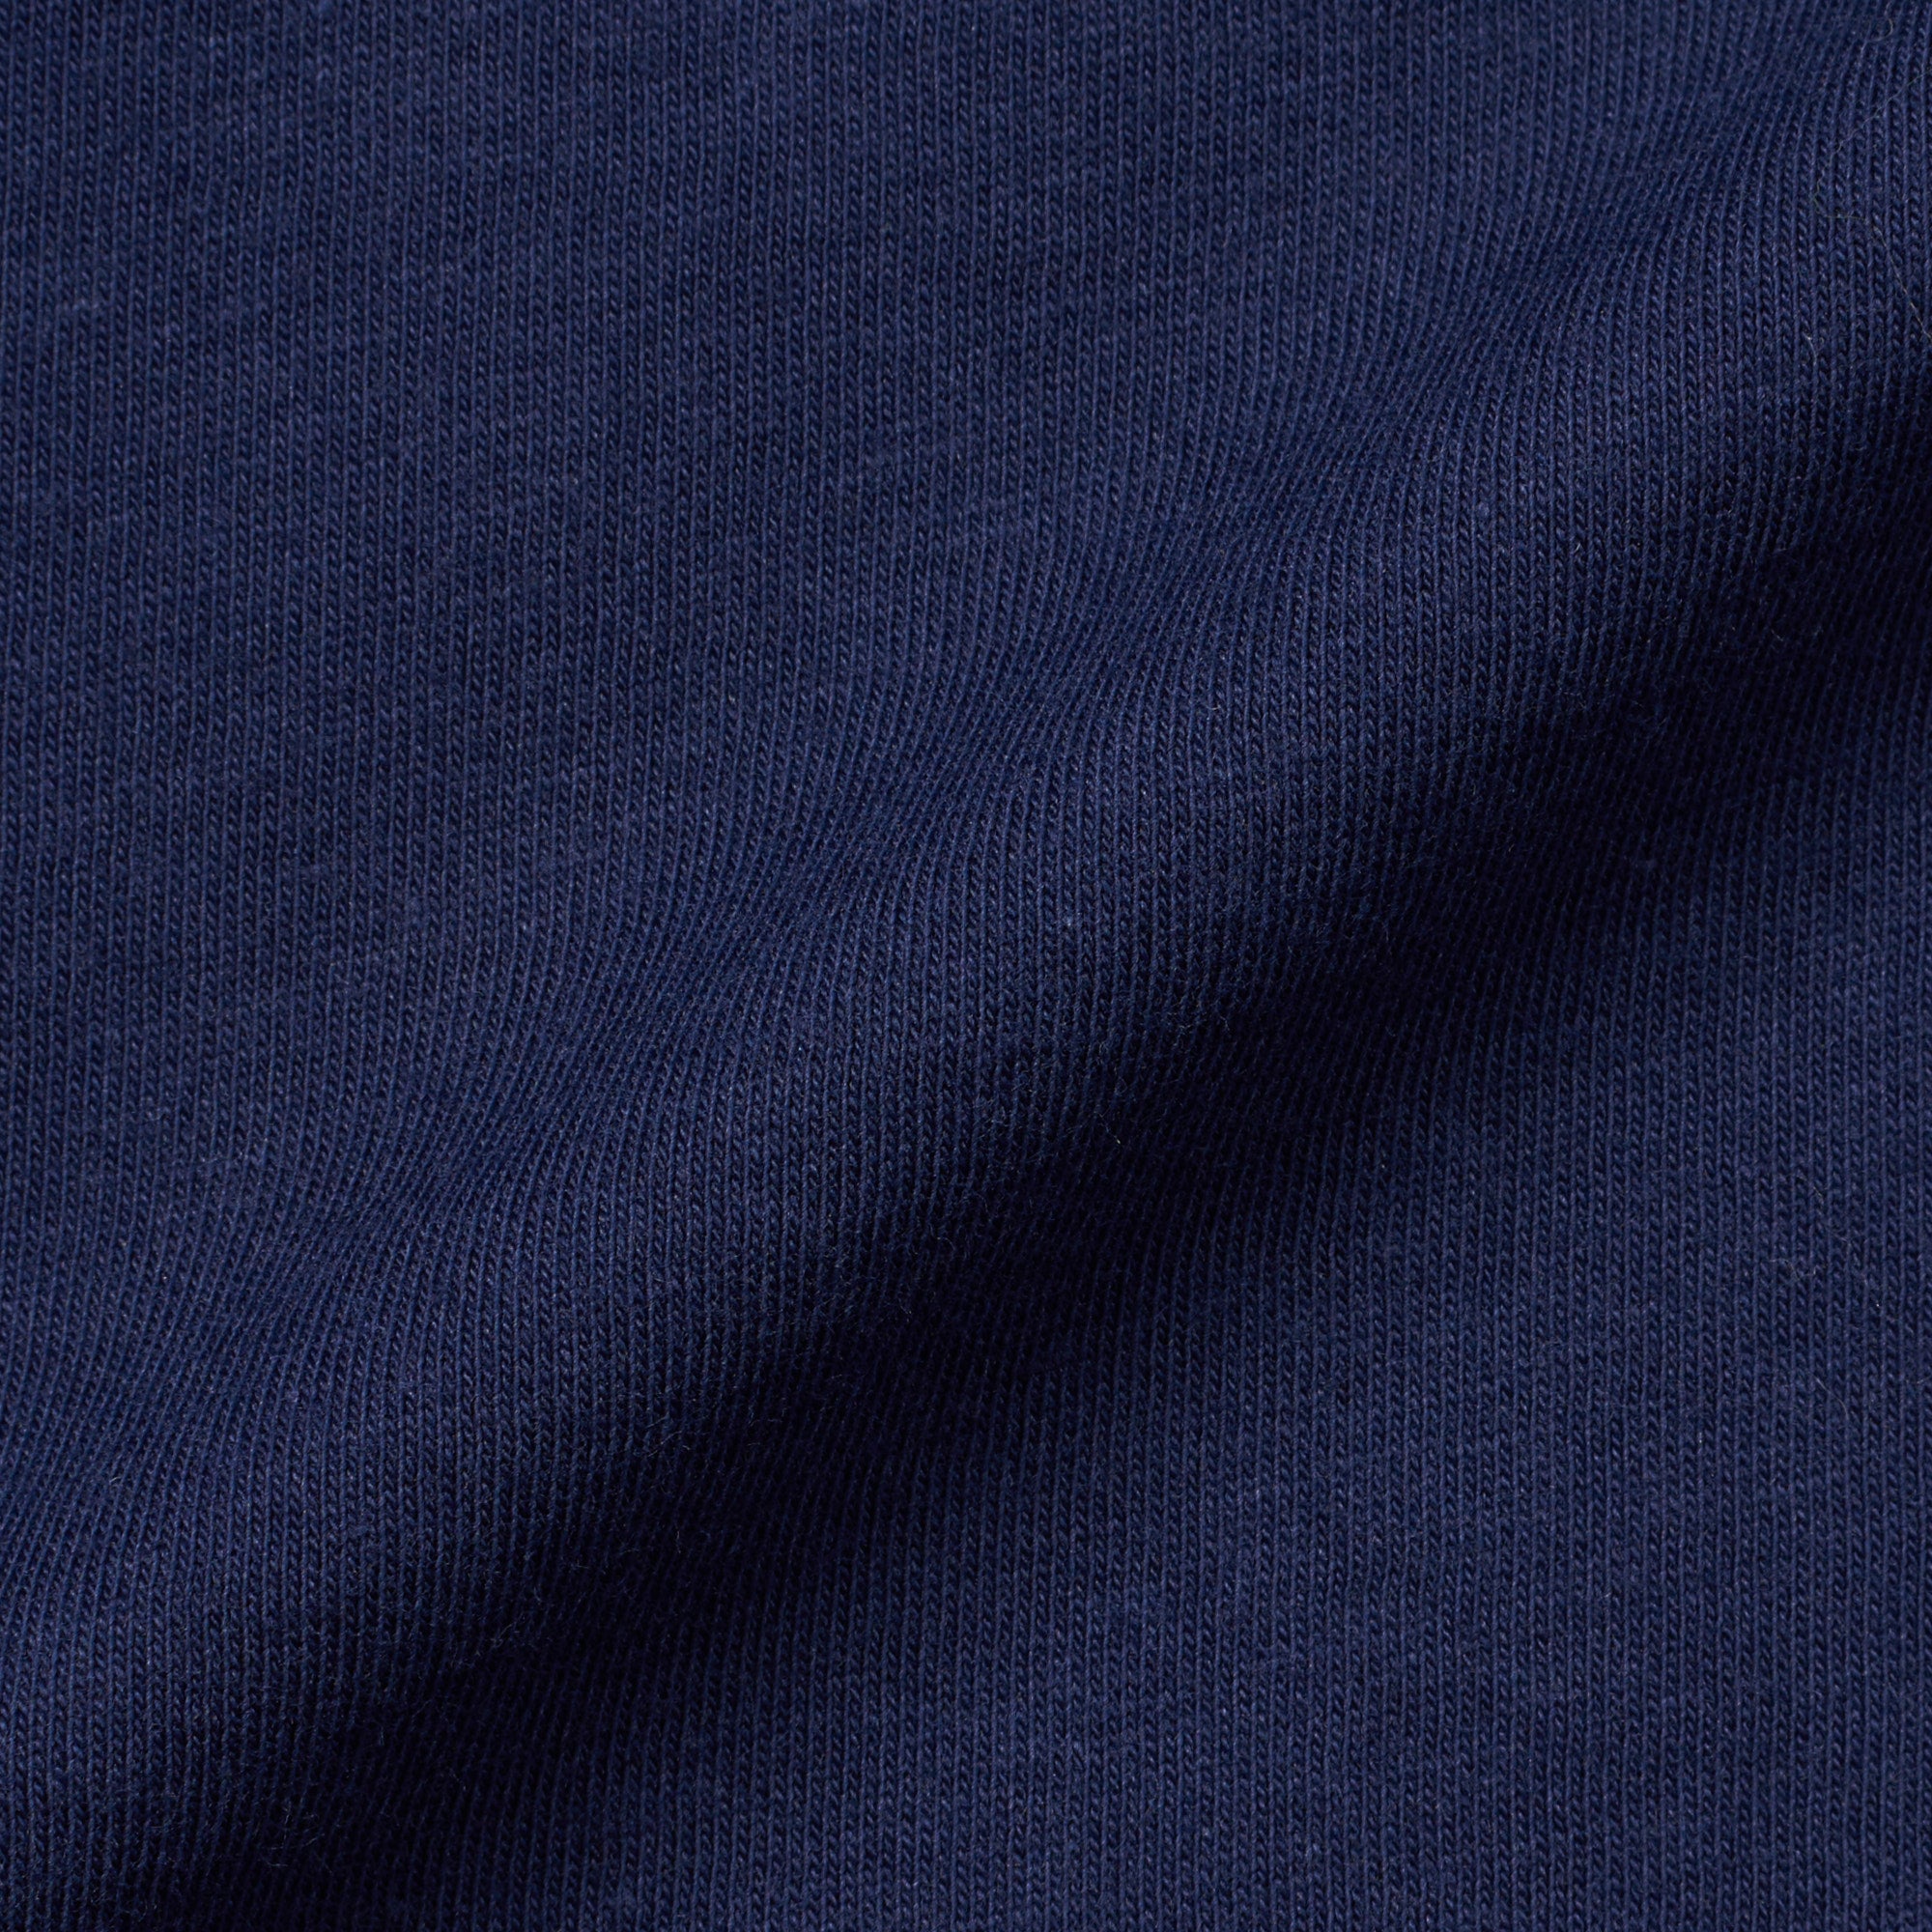 SARTORIO Napoli by KITON Navy Blue Cotton Jersey Short Sleeve Polo Shirt NEW